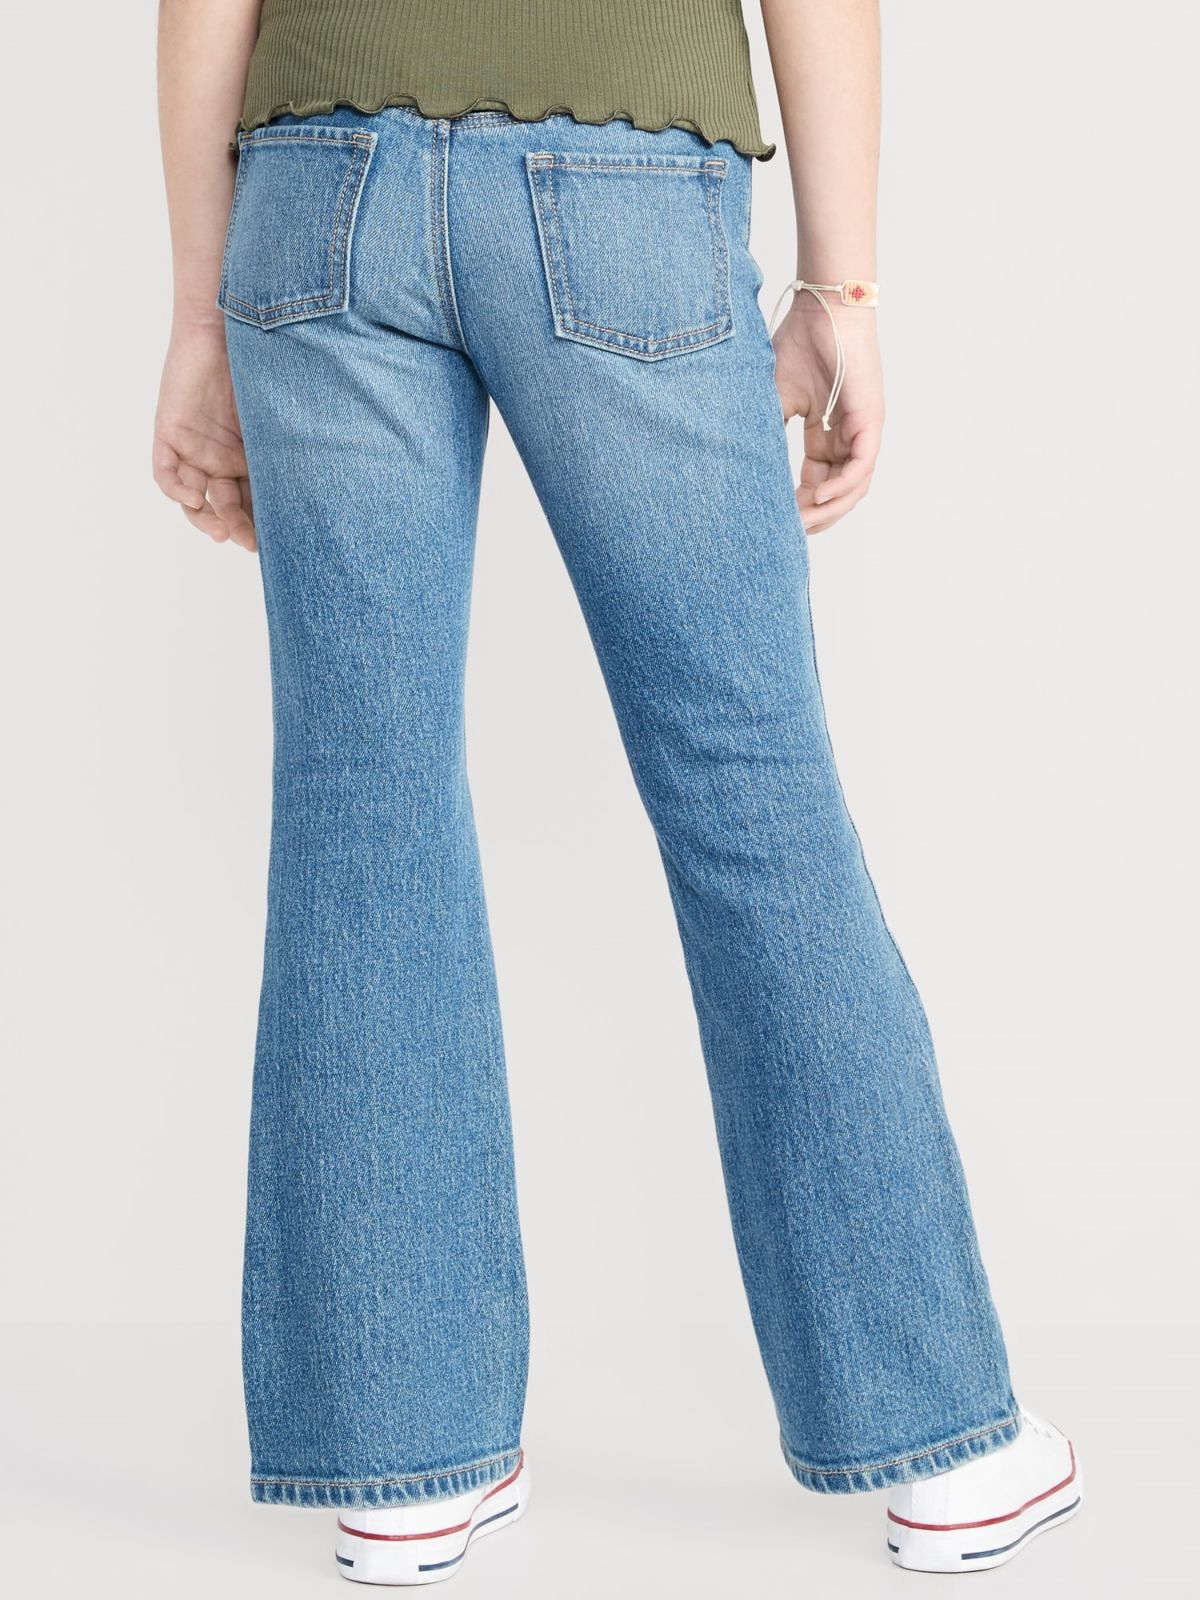  ג'ינס בגזרה מתרחבת של OLD NAVY